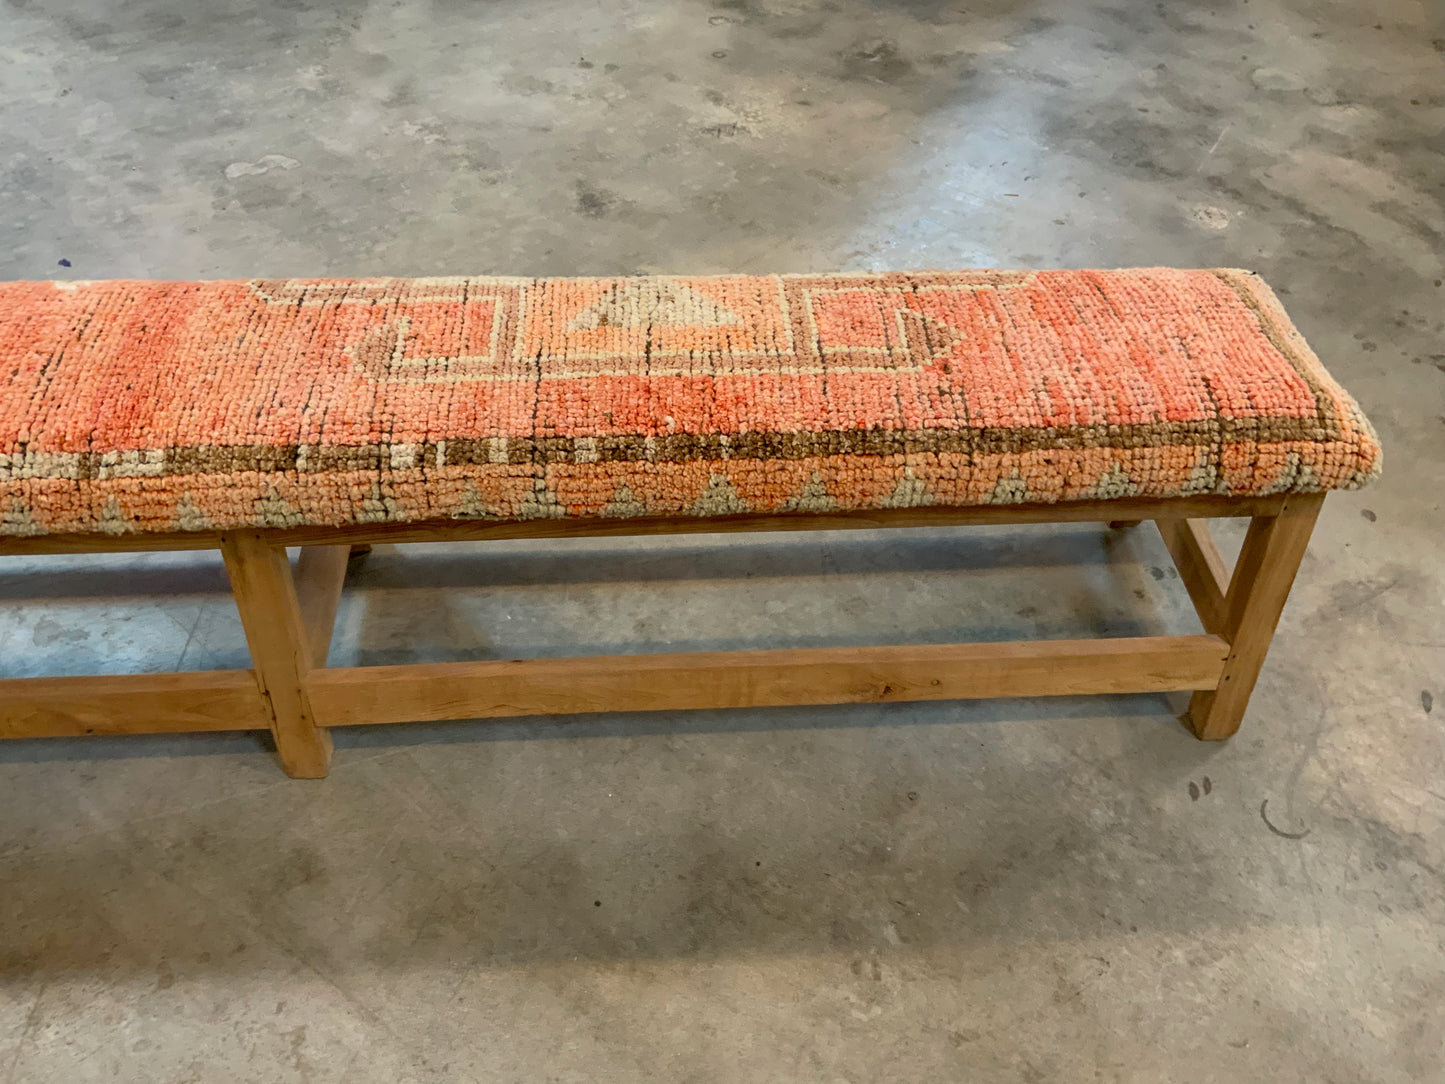 LG - Vintage Rug Upholstered Bleached Wood Bench